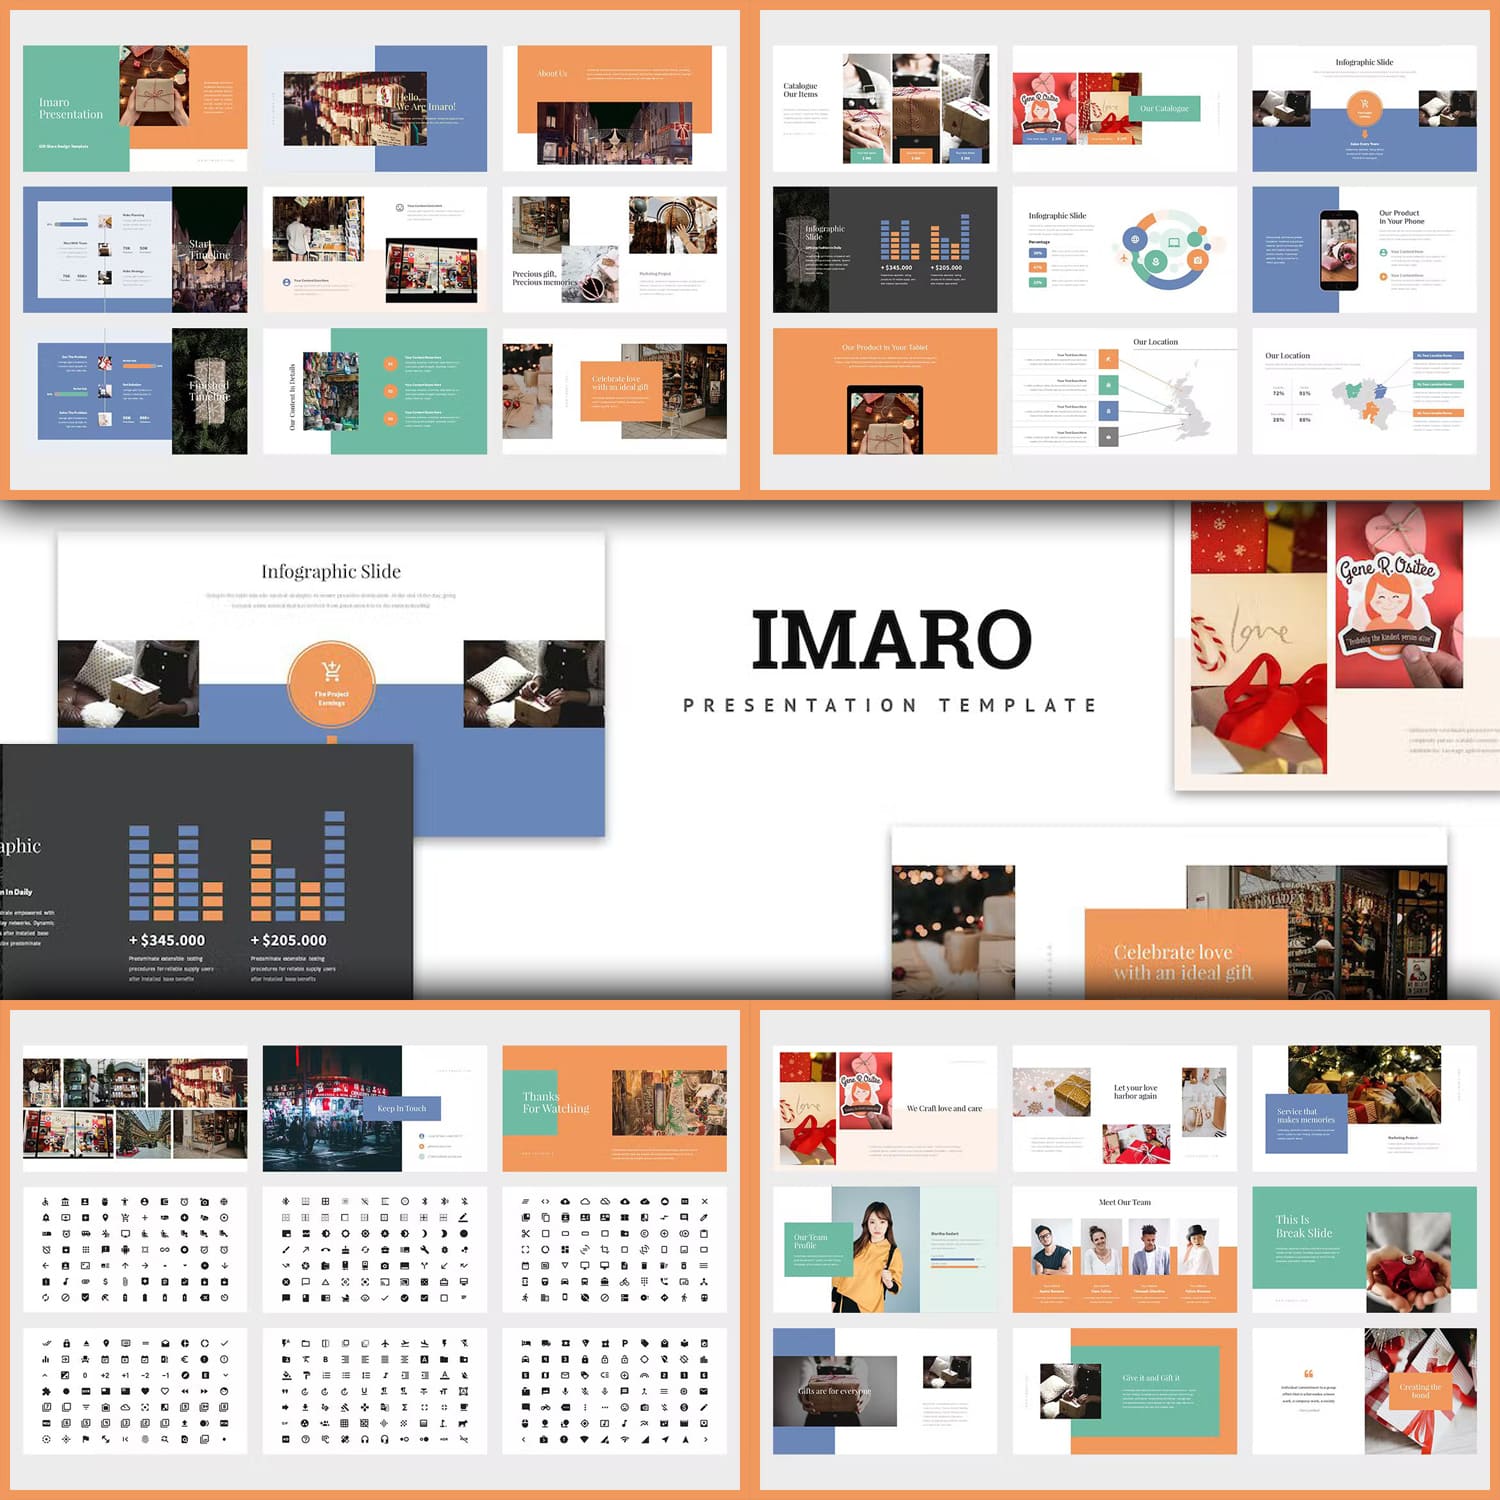 Imaro: Powerpointing Gift Box.